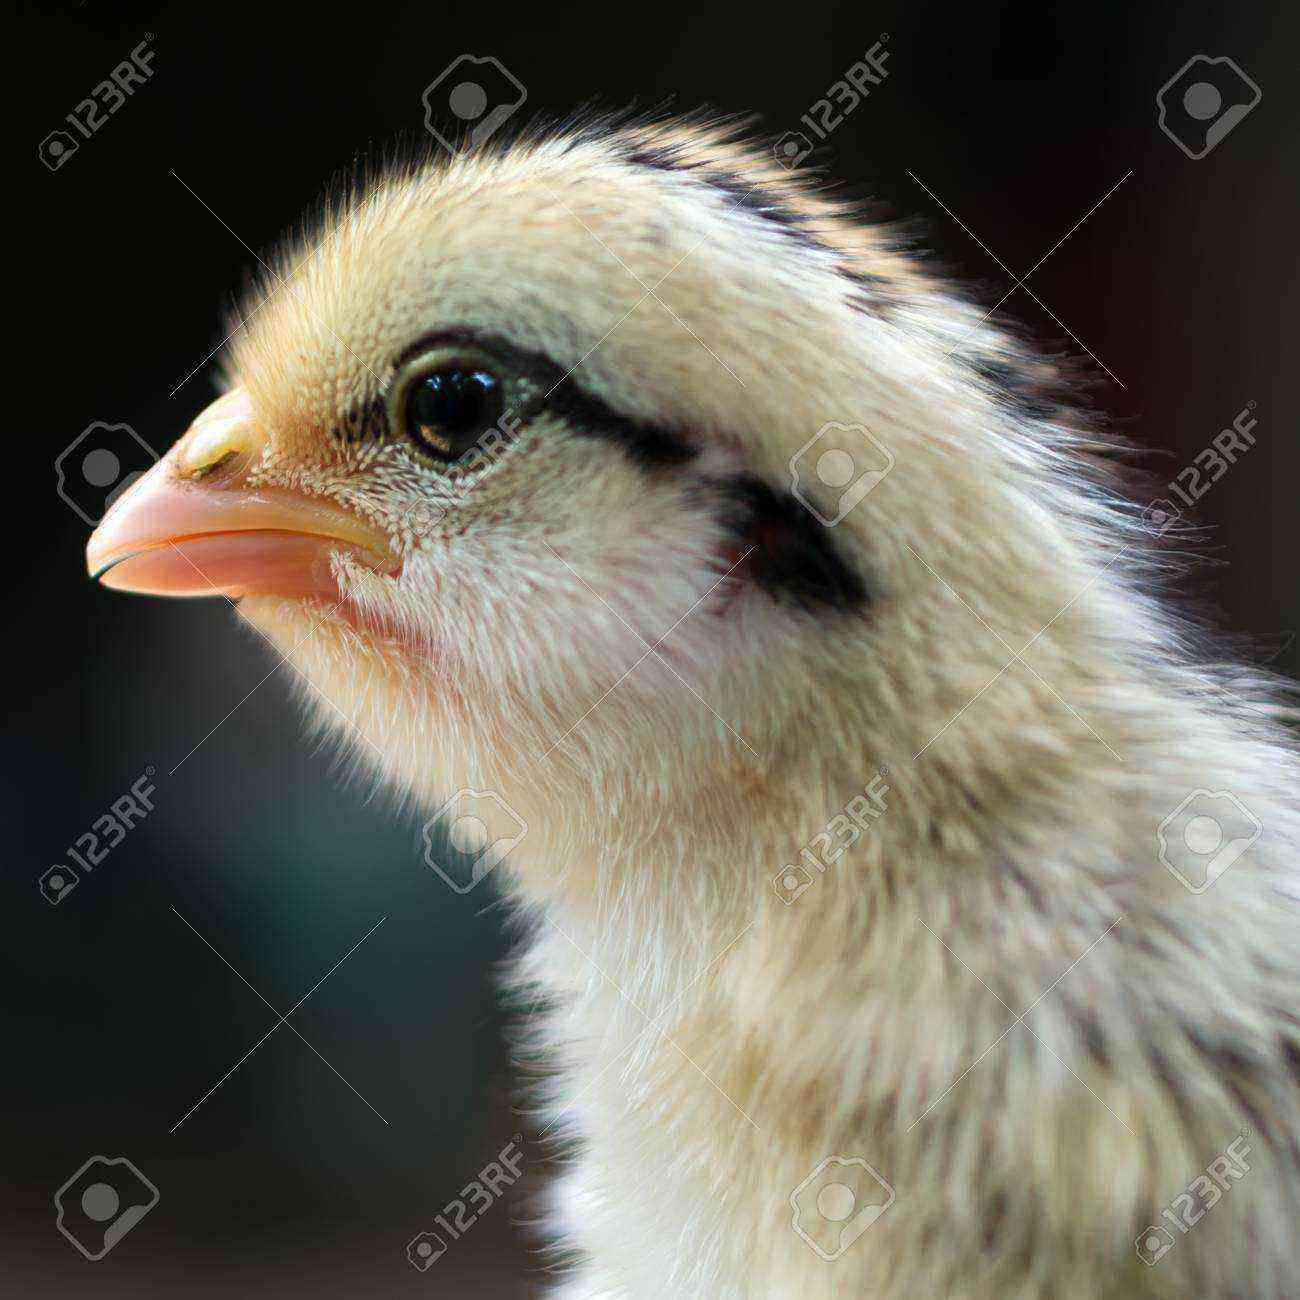 Hühner: Hühner schließen die Augen